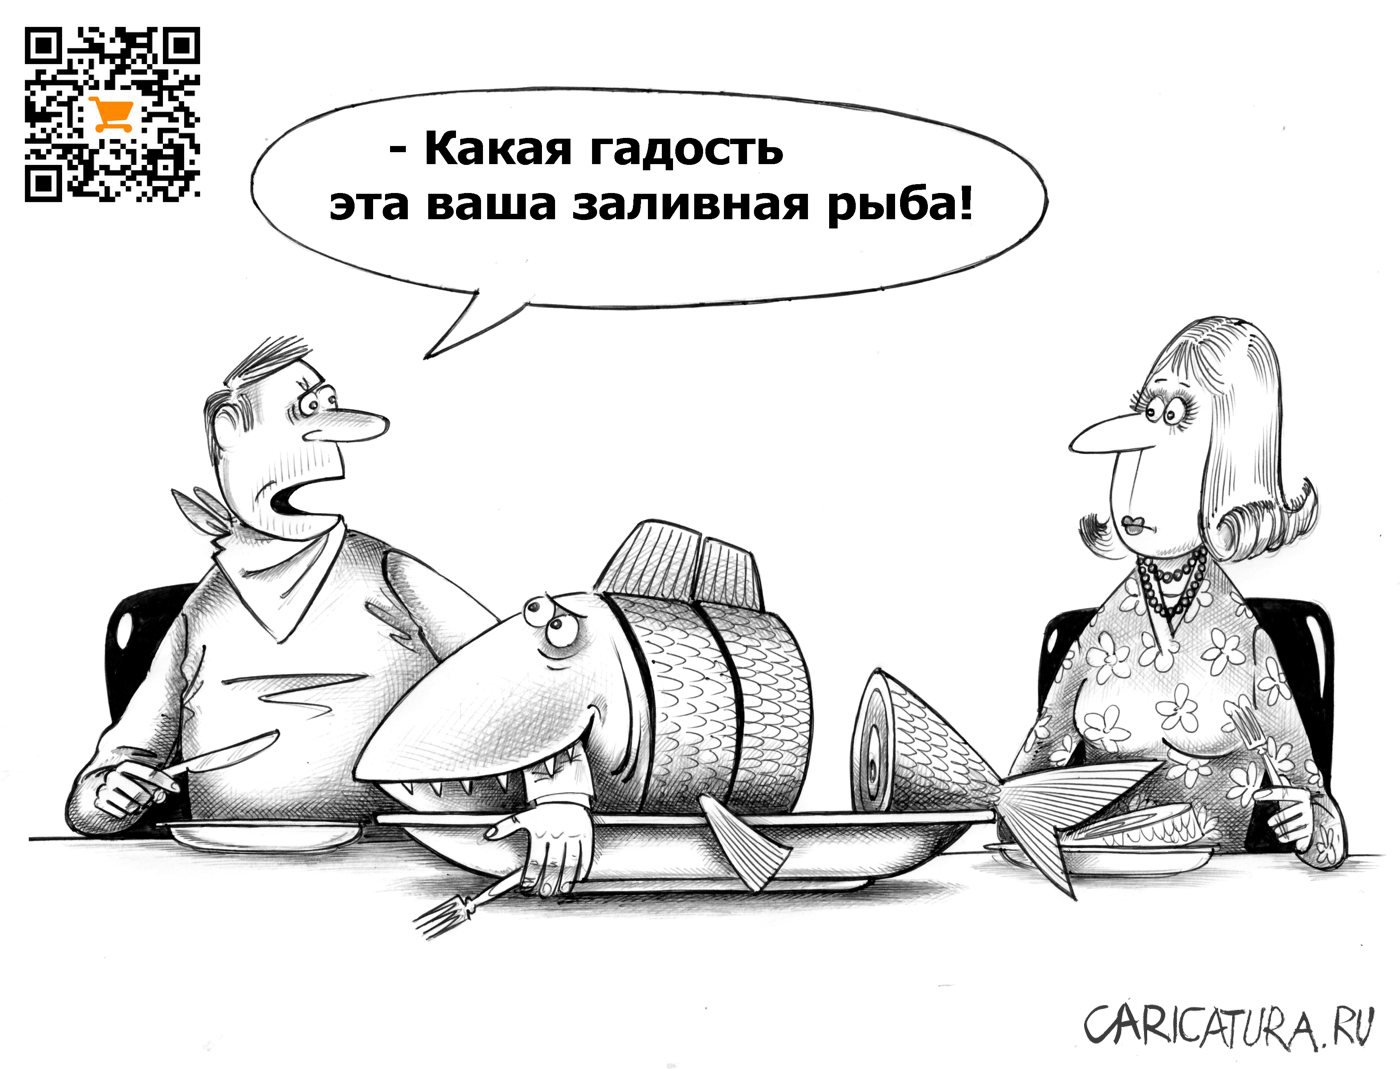 Карикатура "Какая гадость", Сергей Корсун